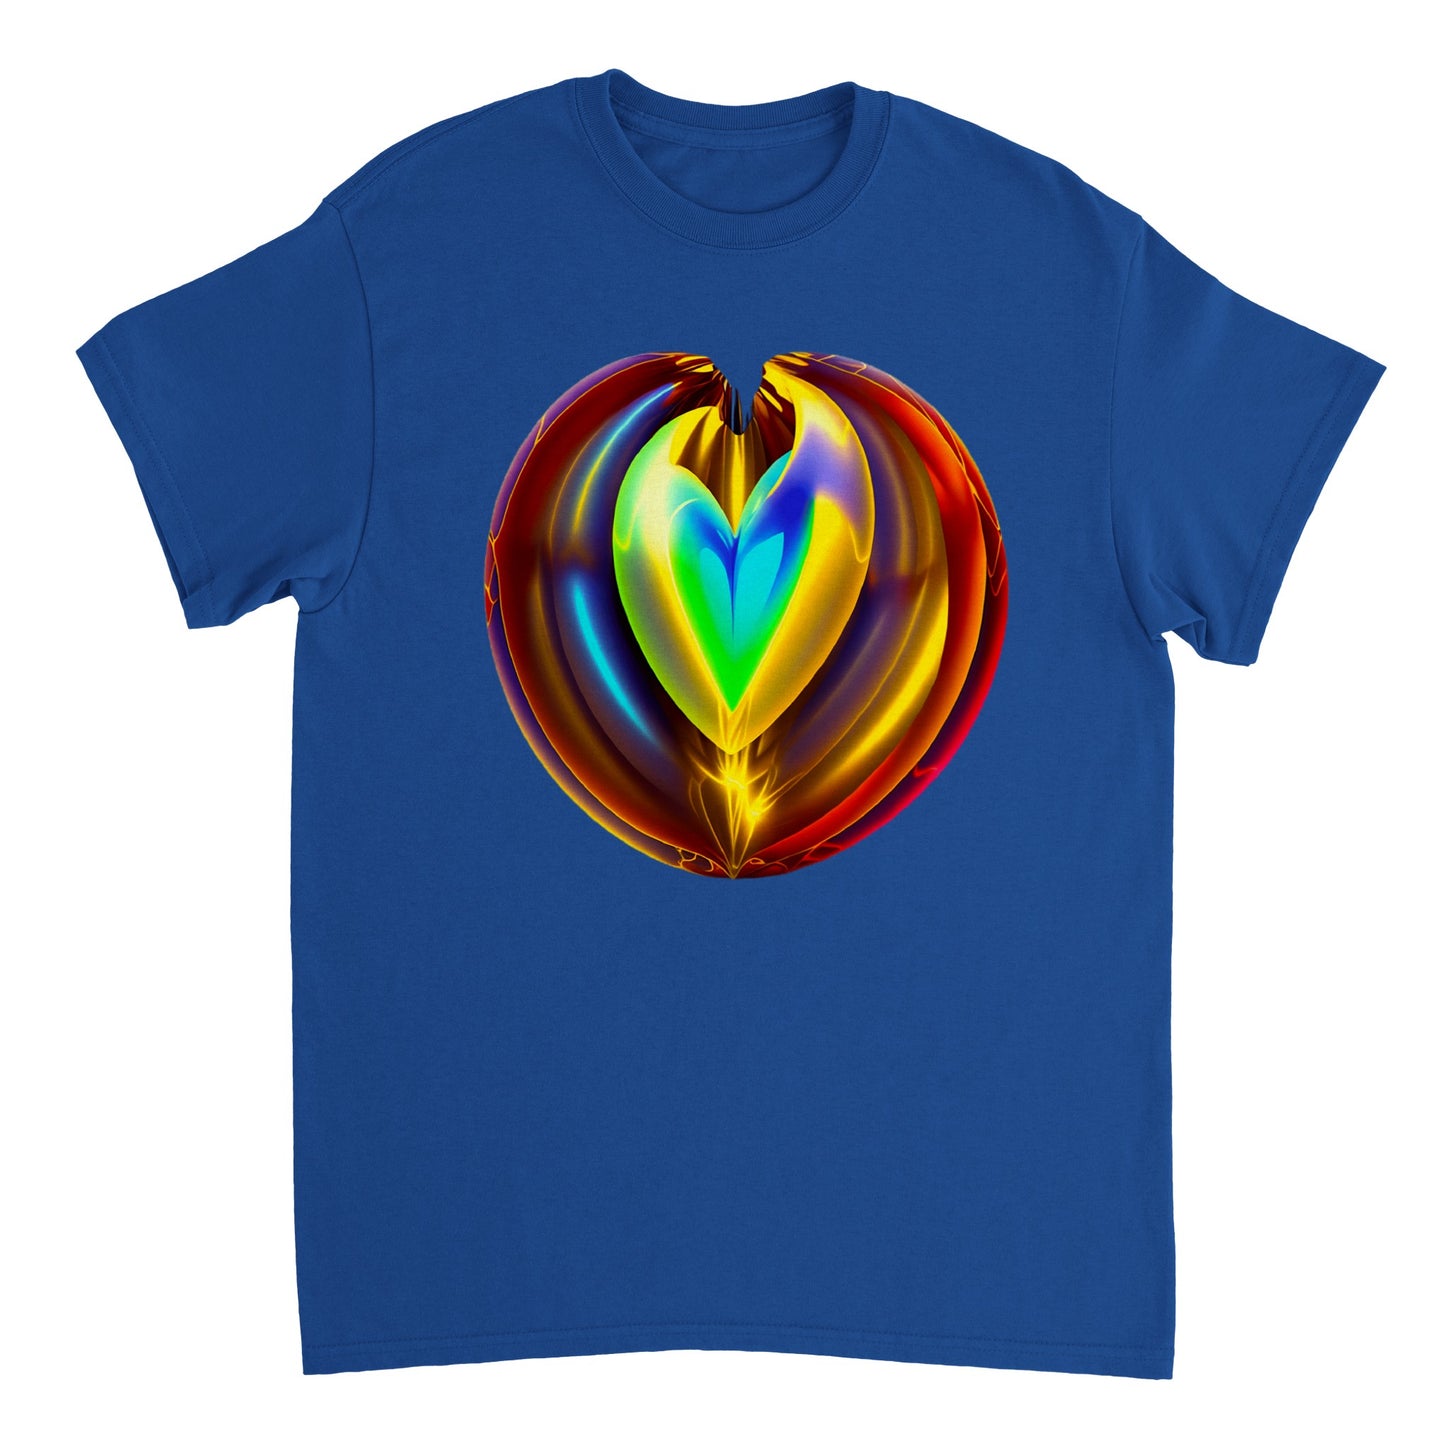 Love Heart - Heavyweight Unisex Crewneck T-shirt 51